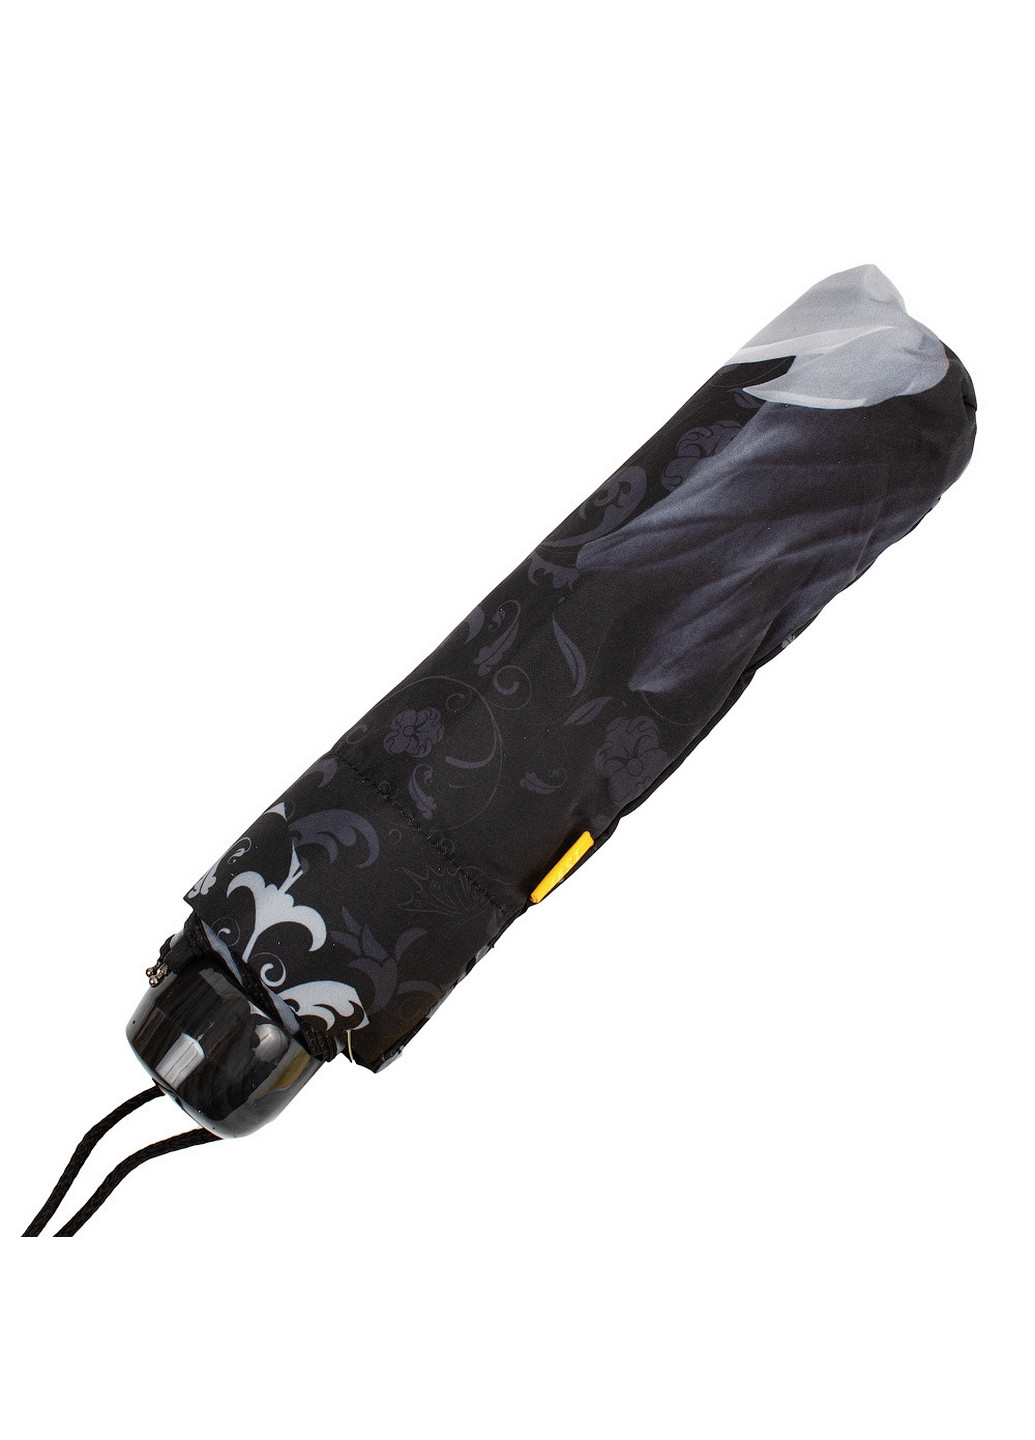 Складной женский зонт механический 96 см Zest (260285770)